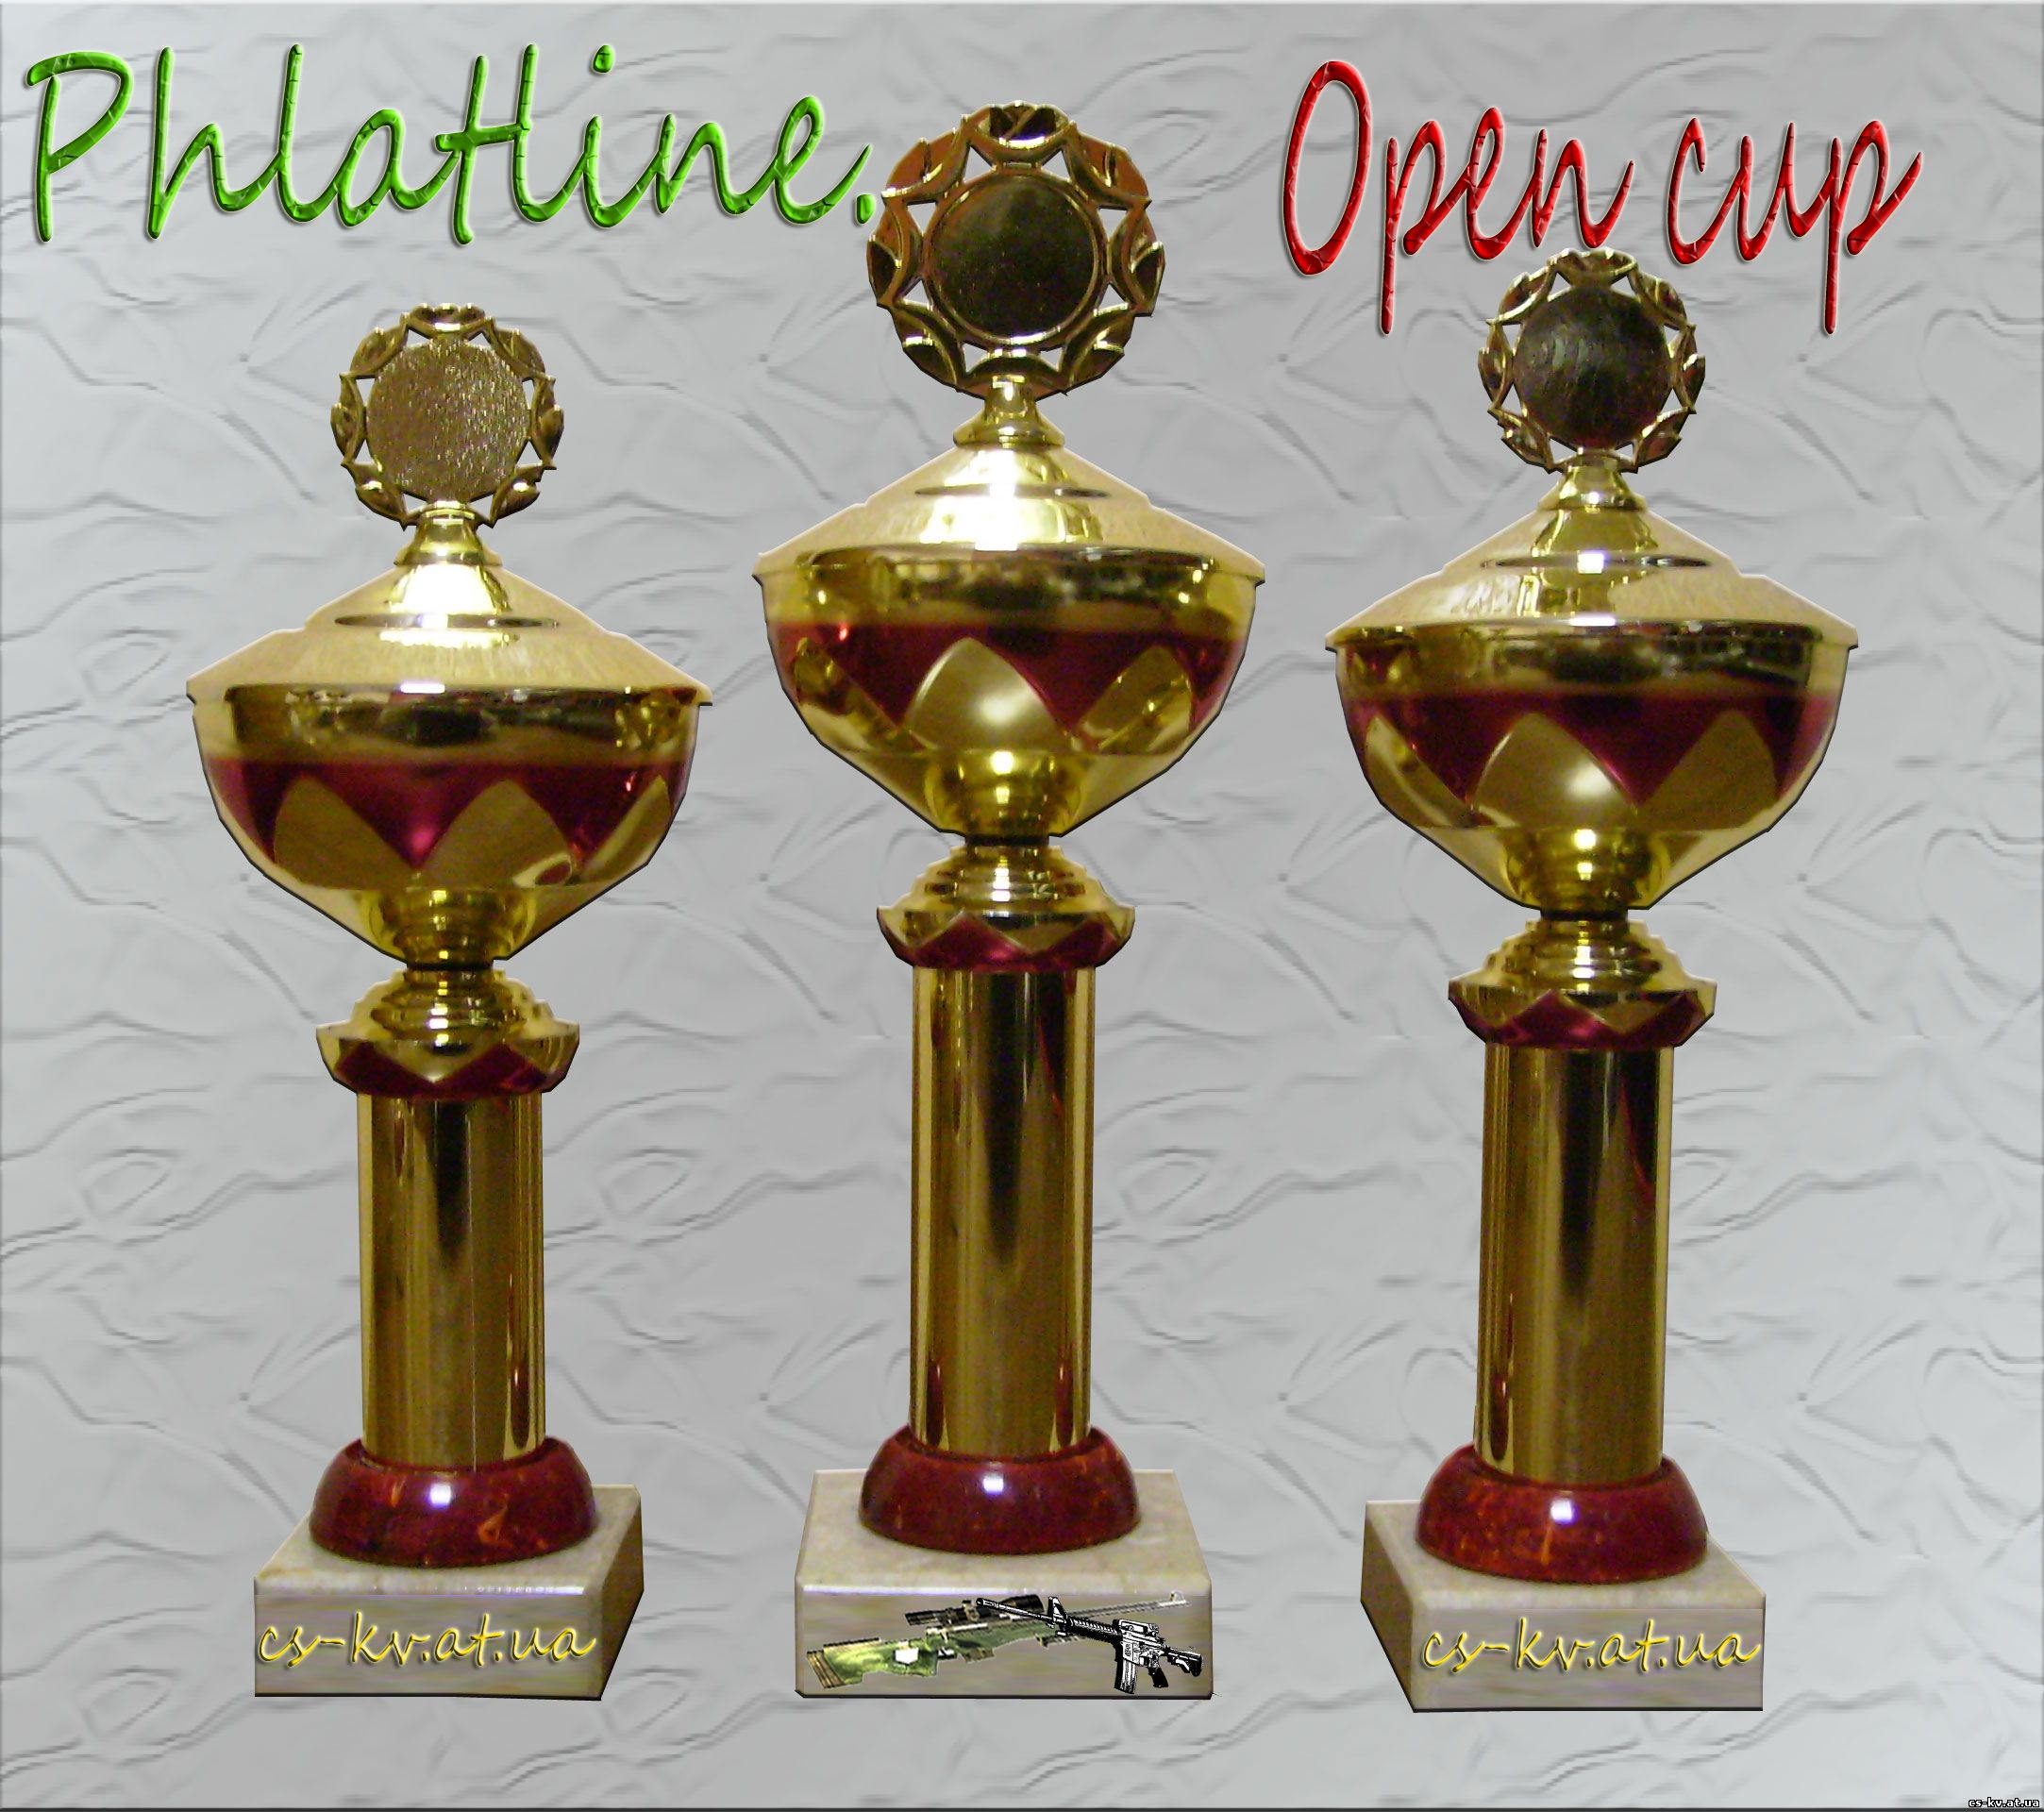 Phlatline open cup